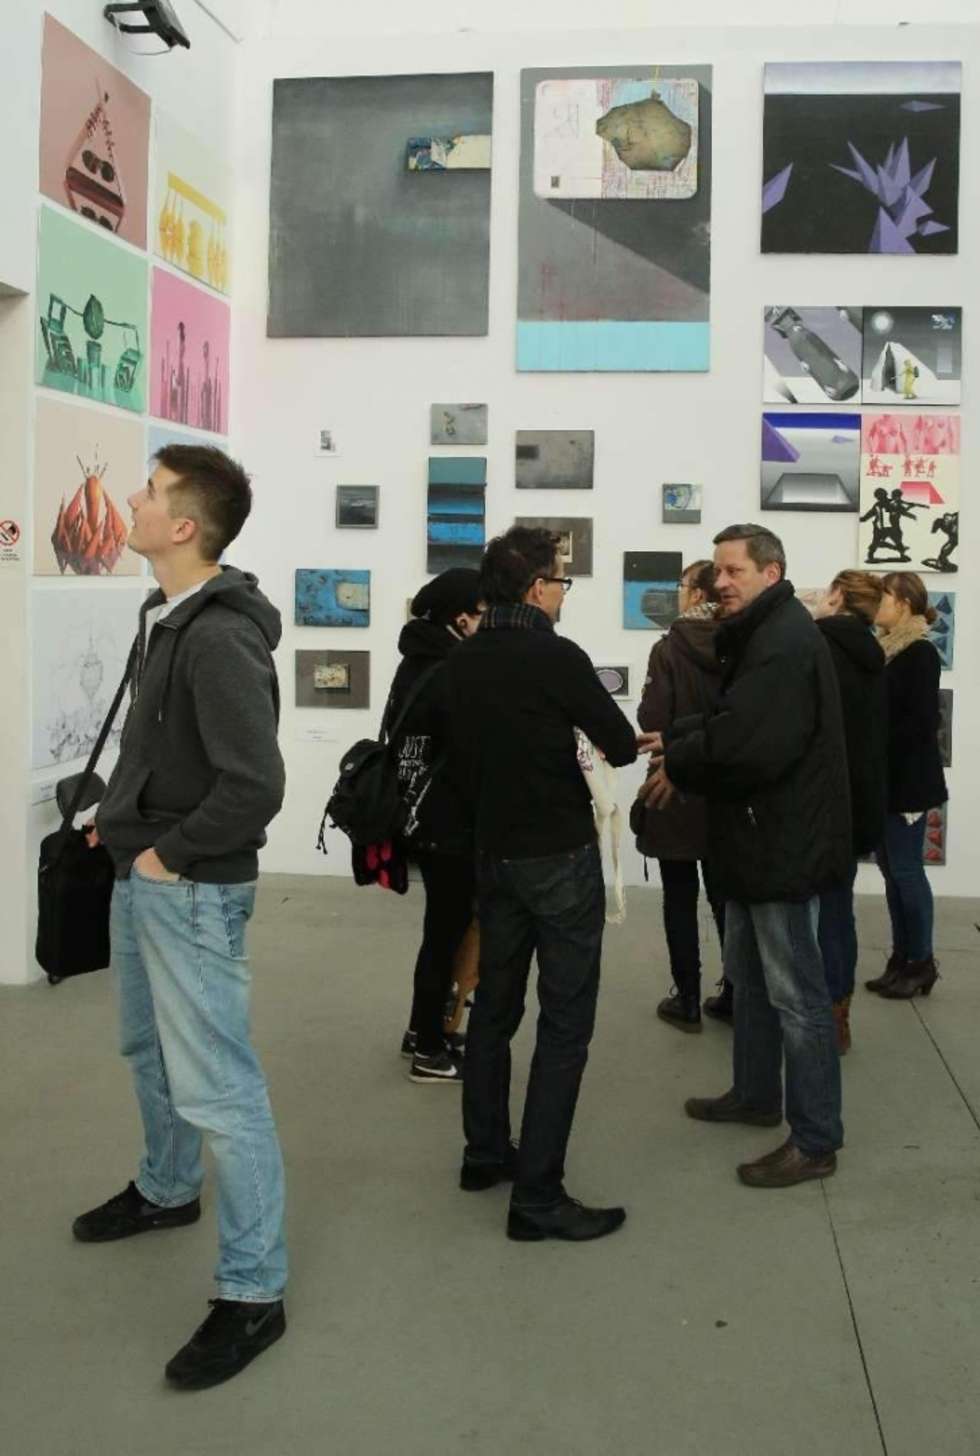  W lubelskiej Galerii Labirynt przy ul. Popiełuszki 5 odbywają się Targi Młodej Sztuki ART INN. Fot. Maciej Kaczanowski